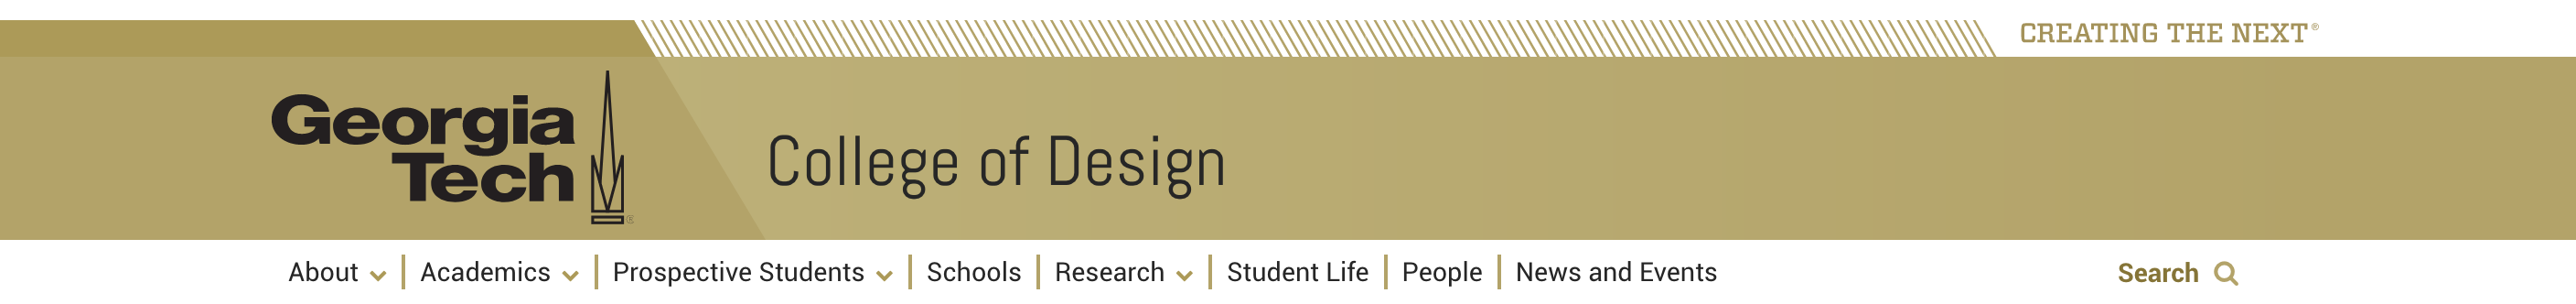 A screenshot of the College of Design Website menu.